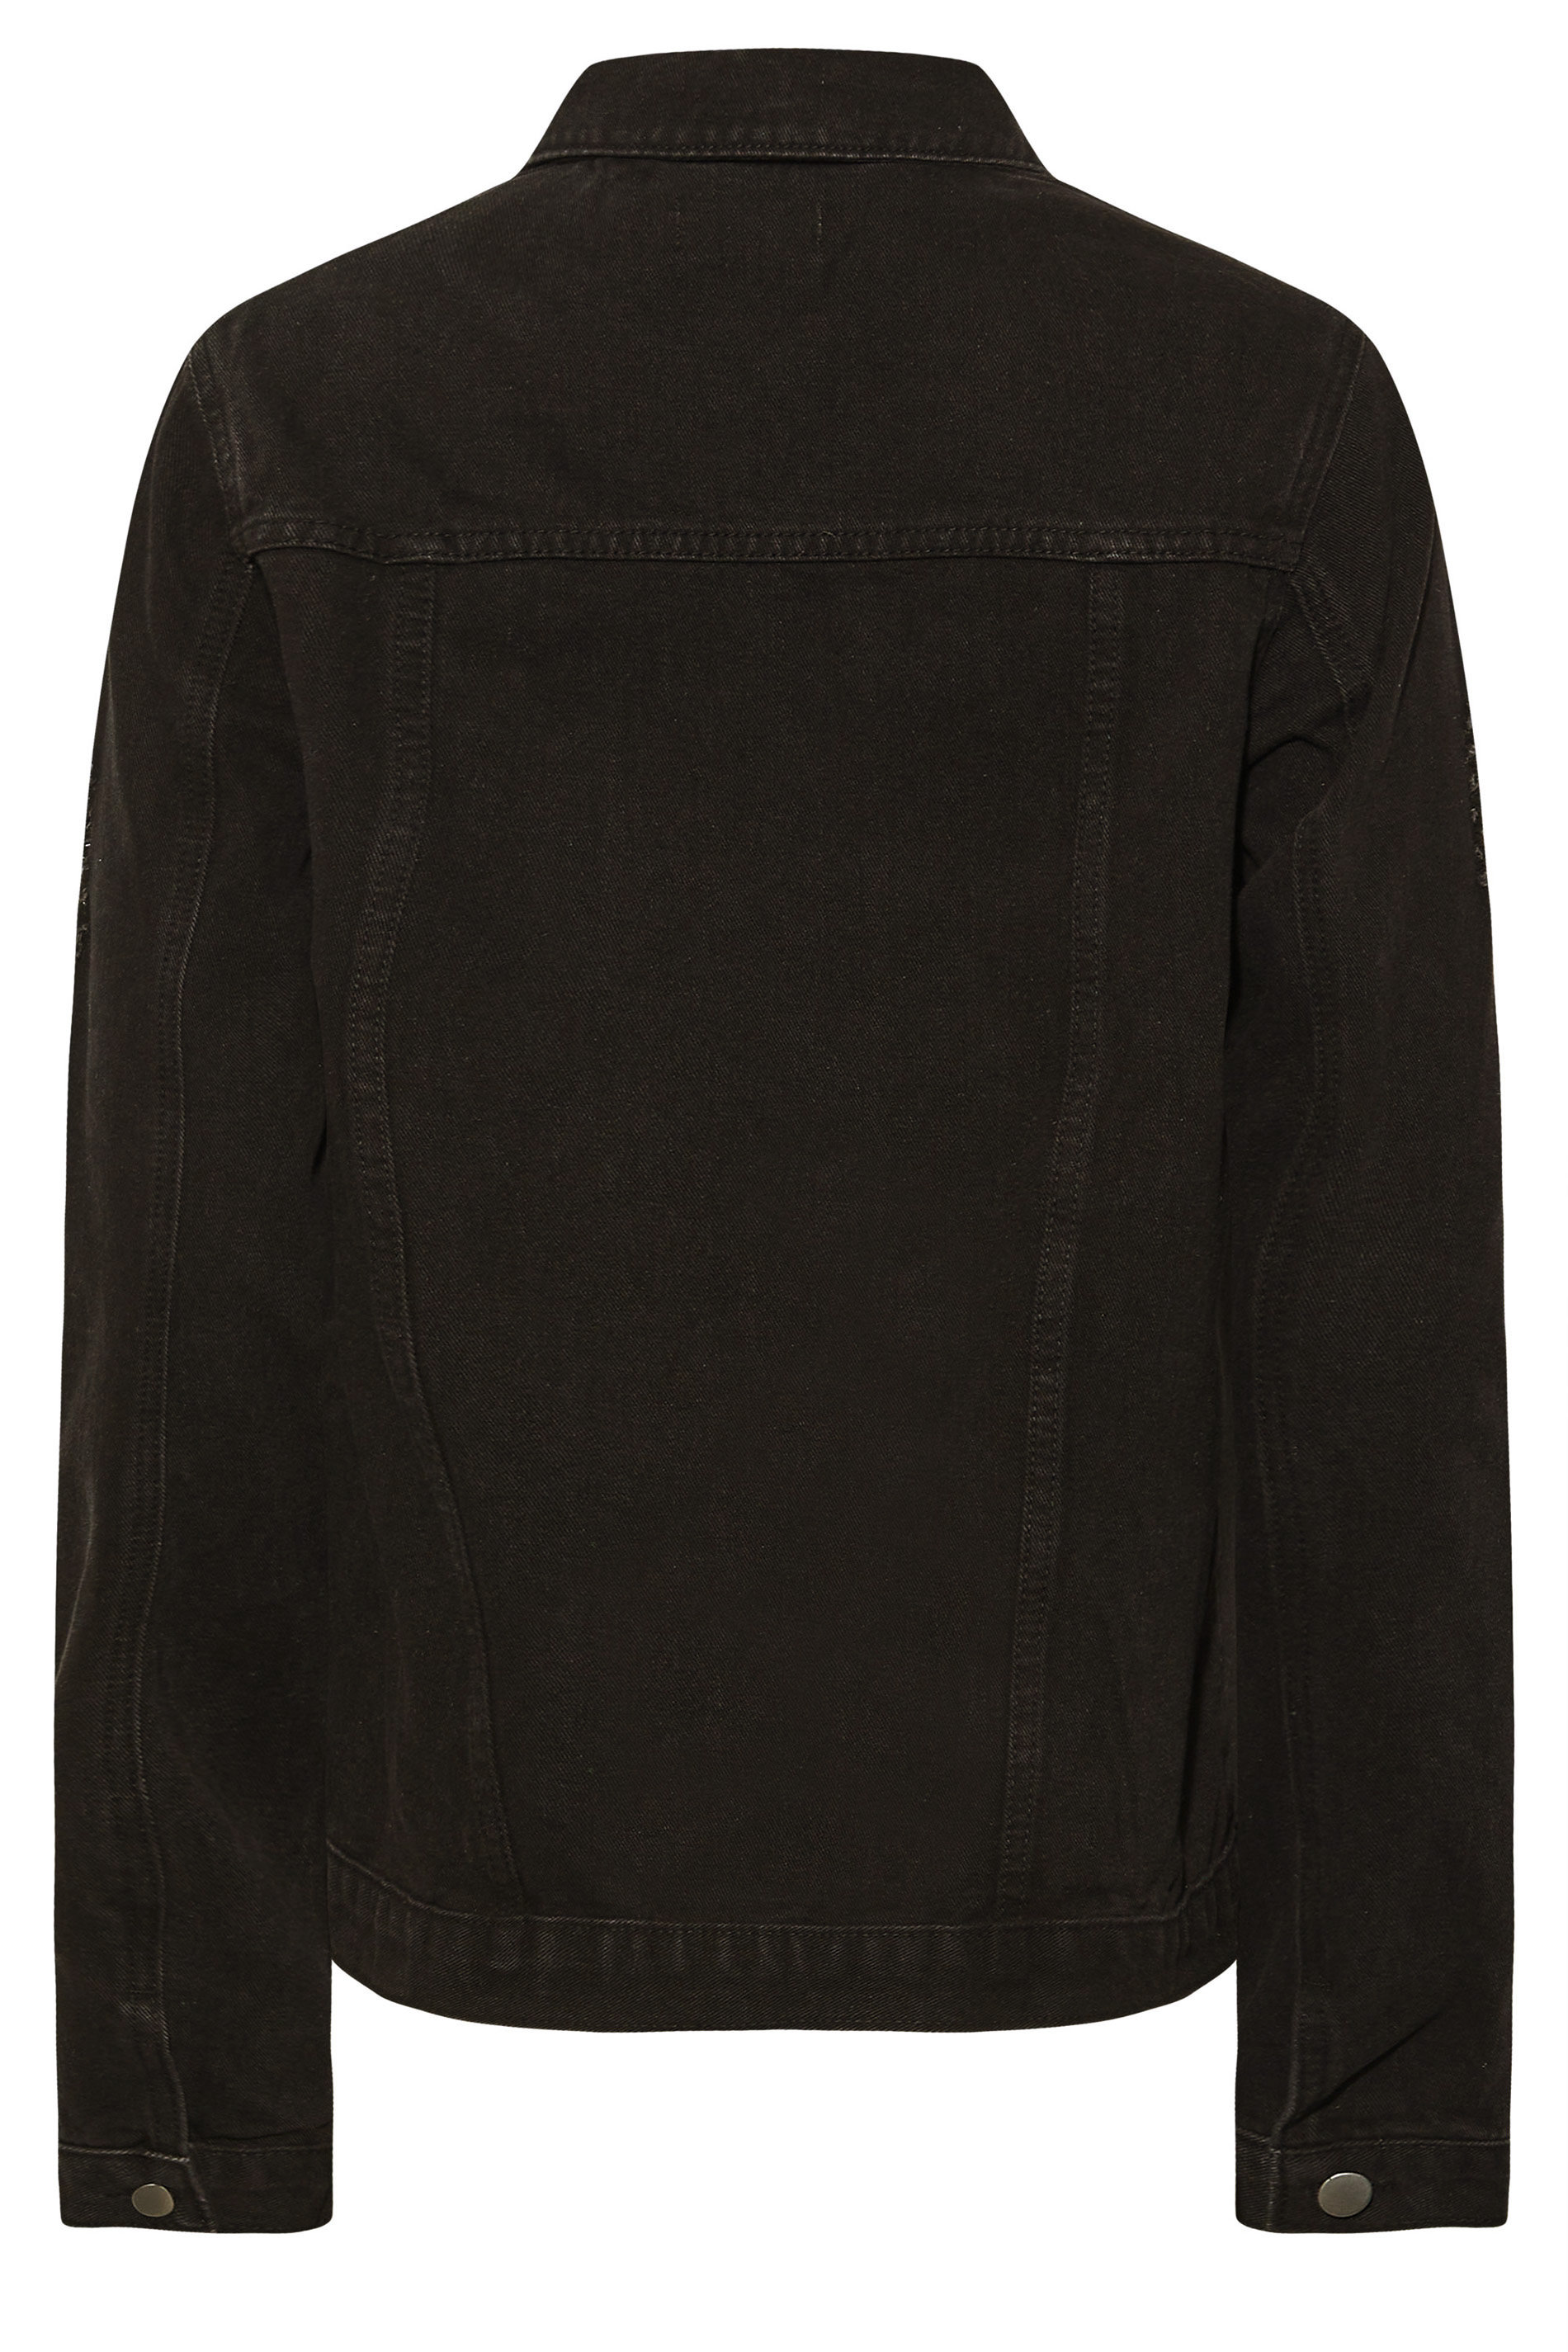 Tall Women's LTS Black Distressed Denim Jacket | Long Tall Sally